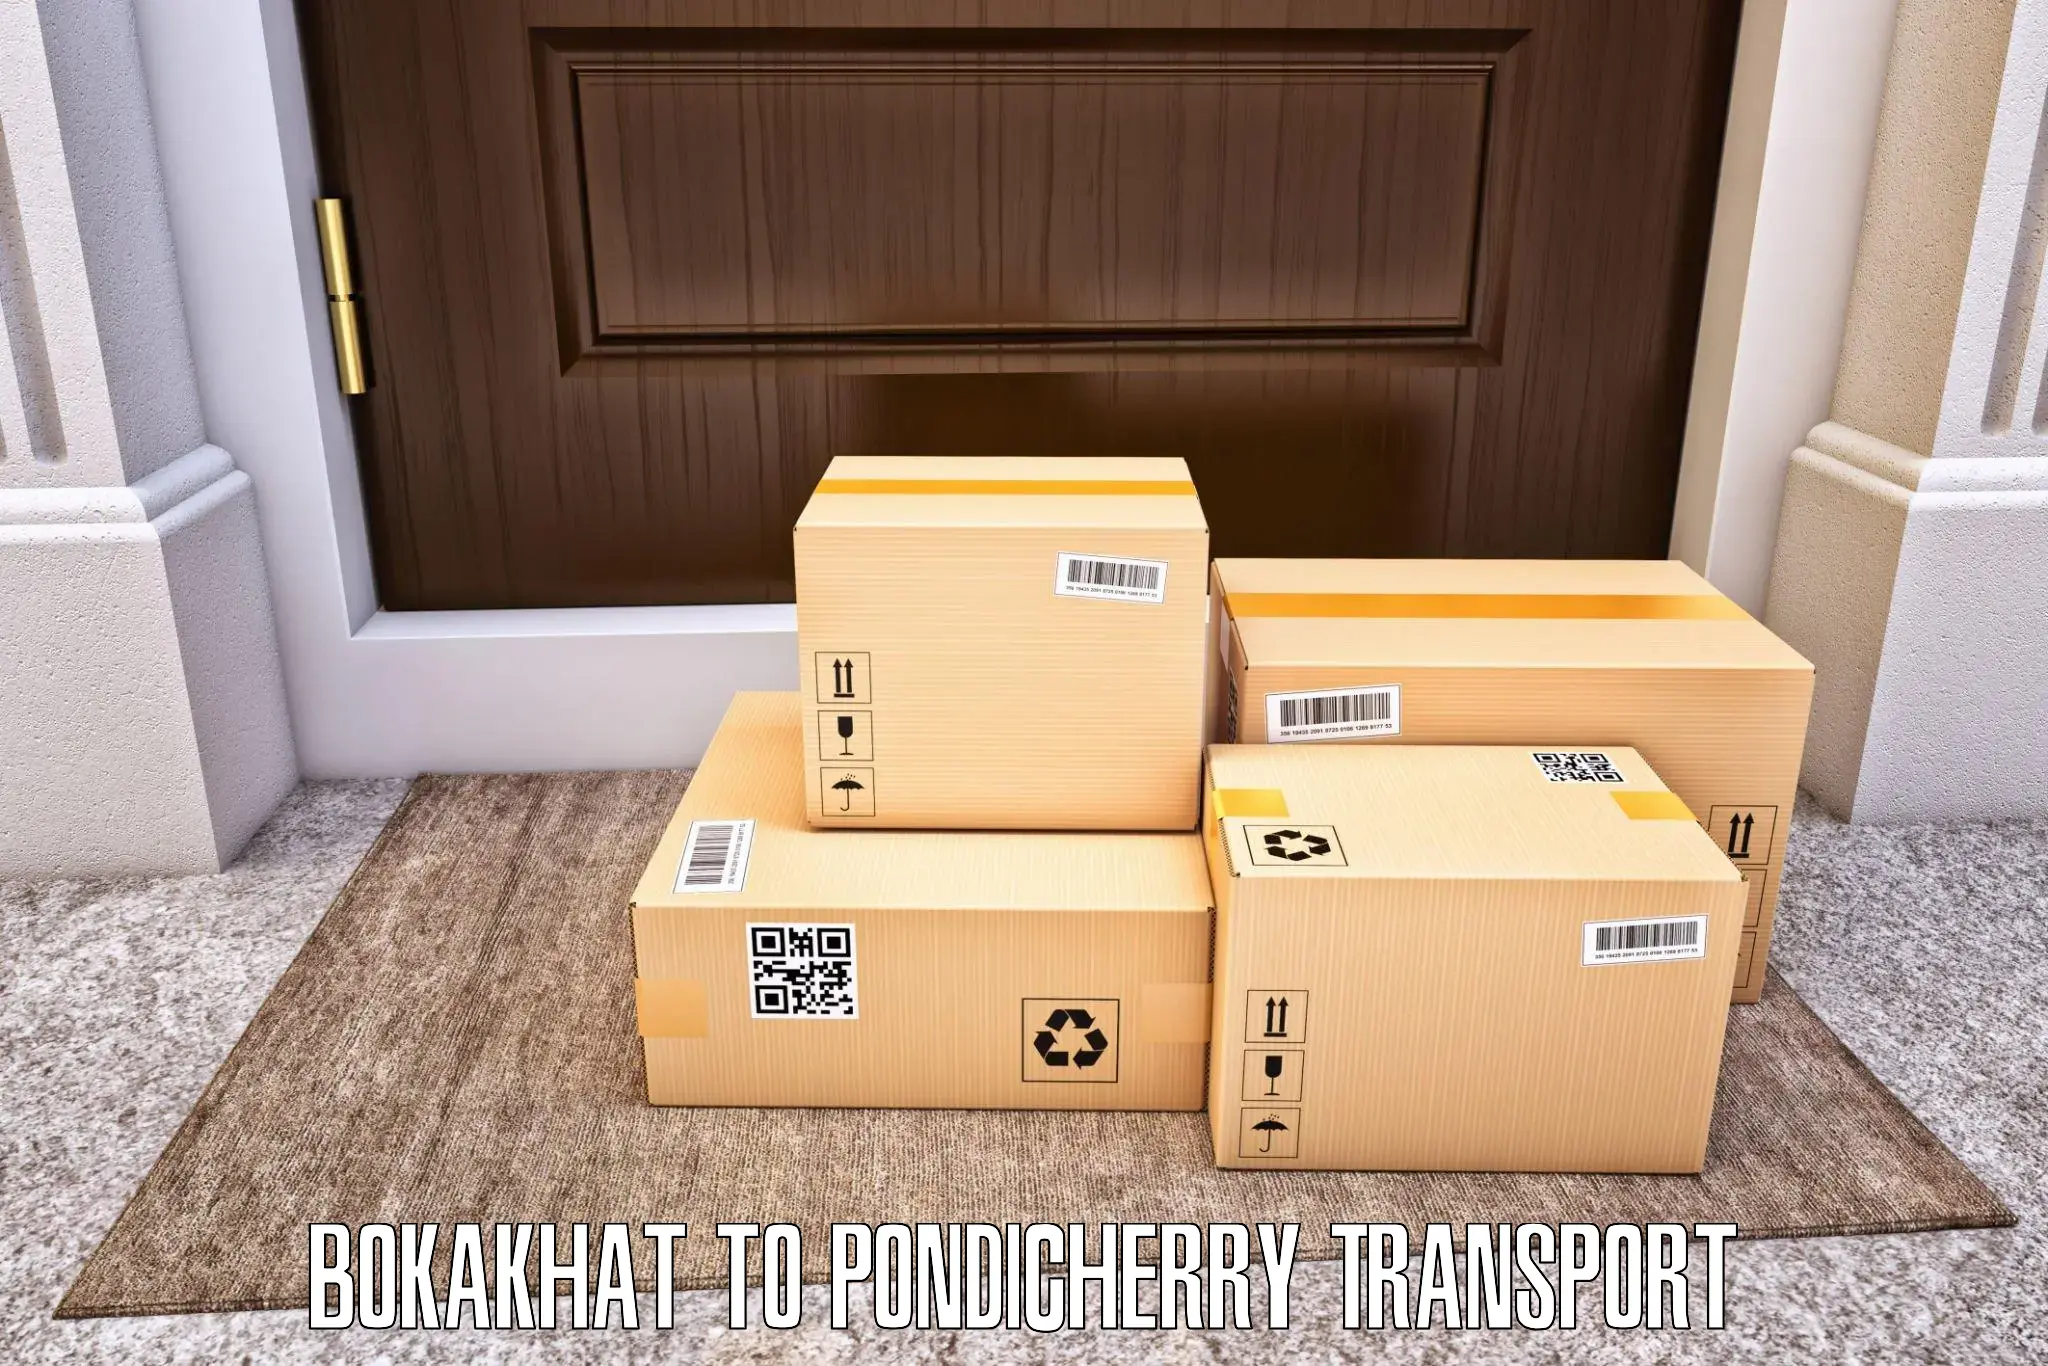 Online transport service Bokakhat to Pondicherry